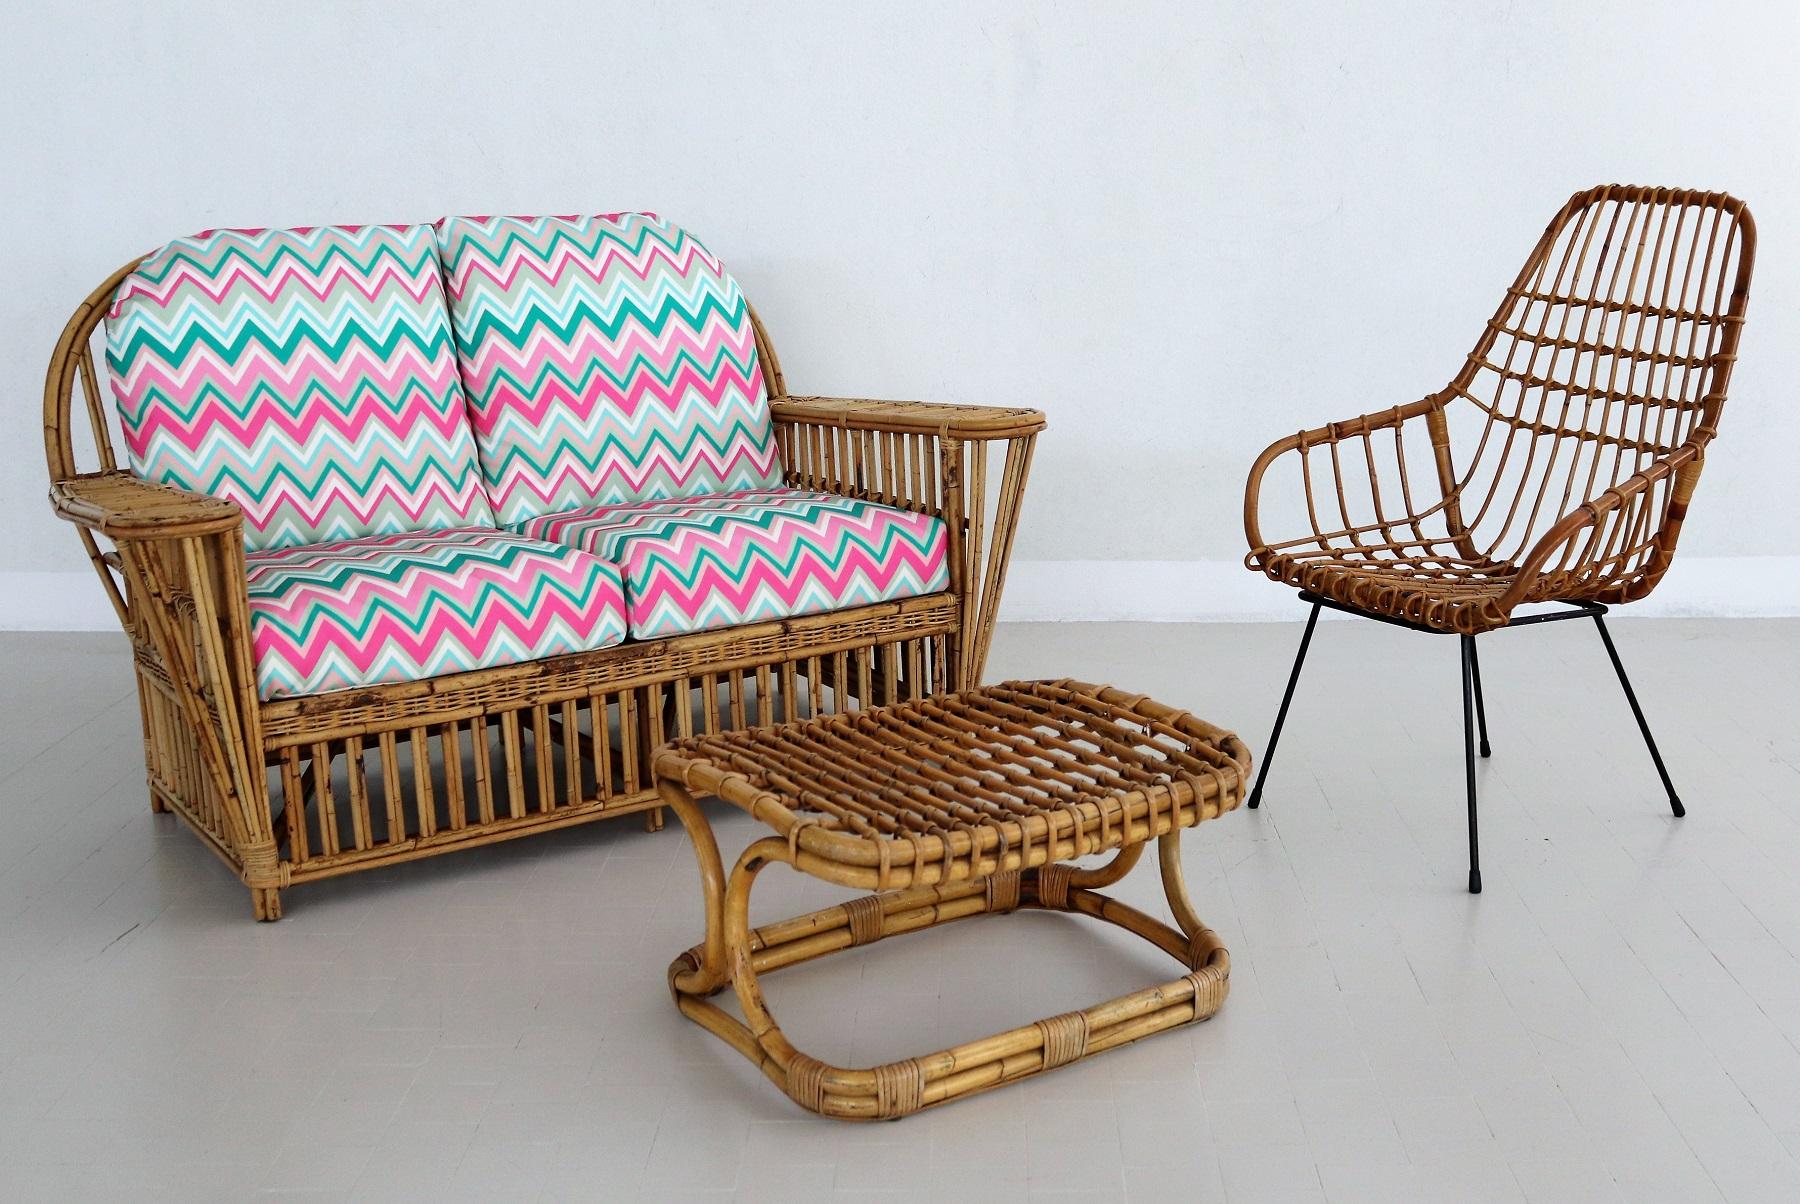 Wunderschönes Zweisitzer-Sofa, komplett aus Bambus und Rattan in Italien hergestellt, 1960er/1970er Jahre.
Das Sofa ist in einem nahezu ausgezeichneten Zustand, da es in der vorherigen Wohnung aufgestellt wurde.
Die Kissen sind mit einem neuen